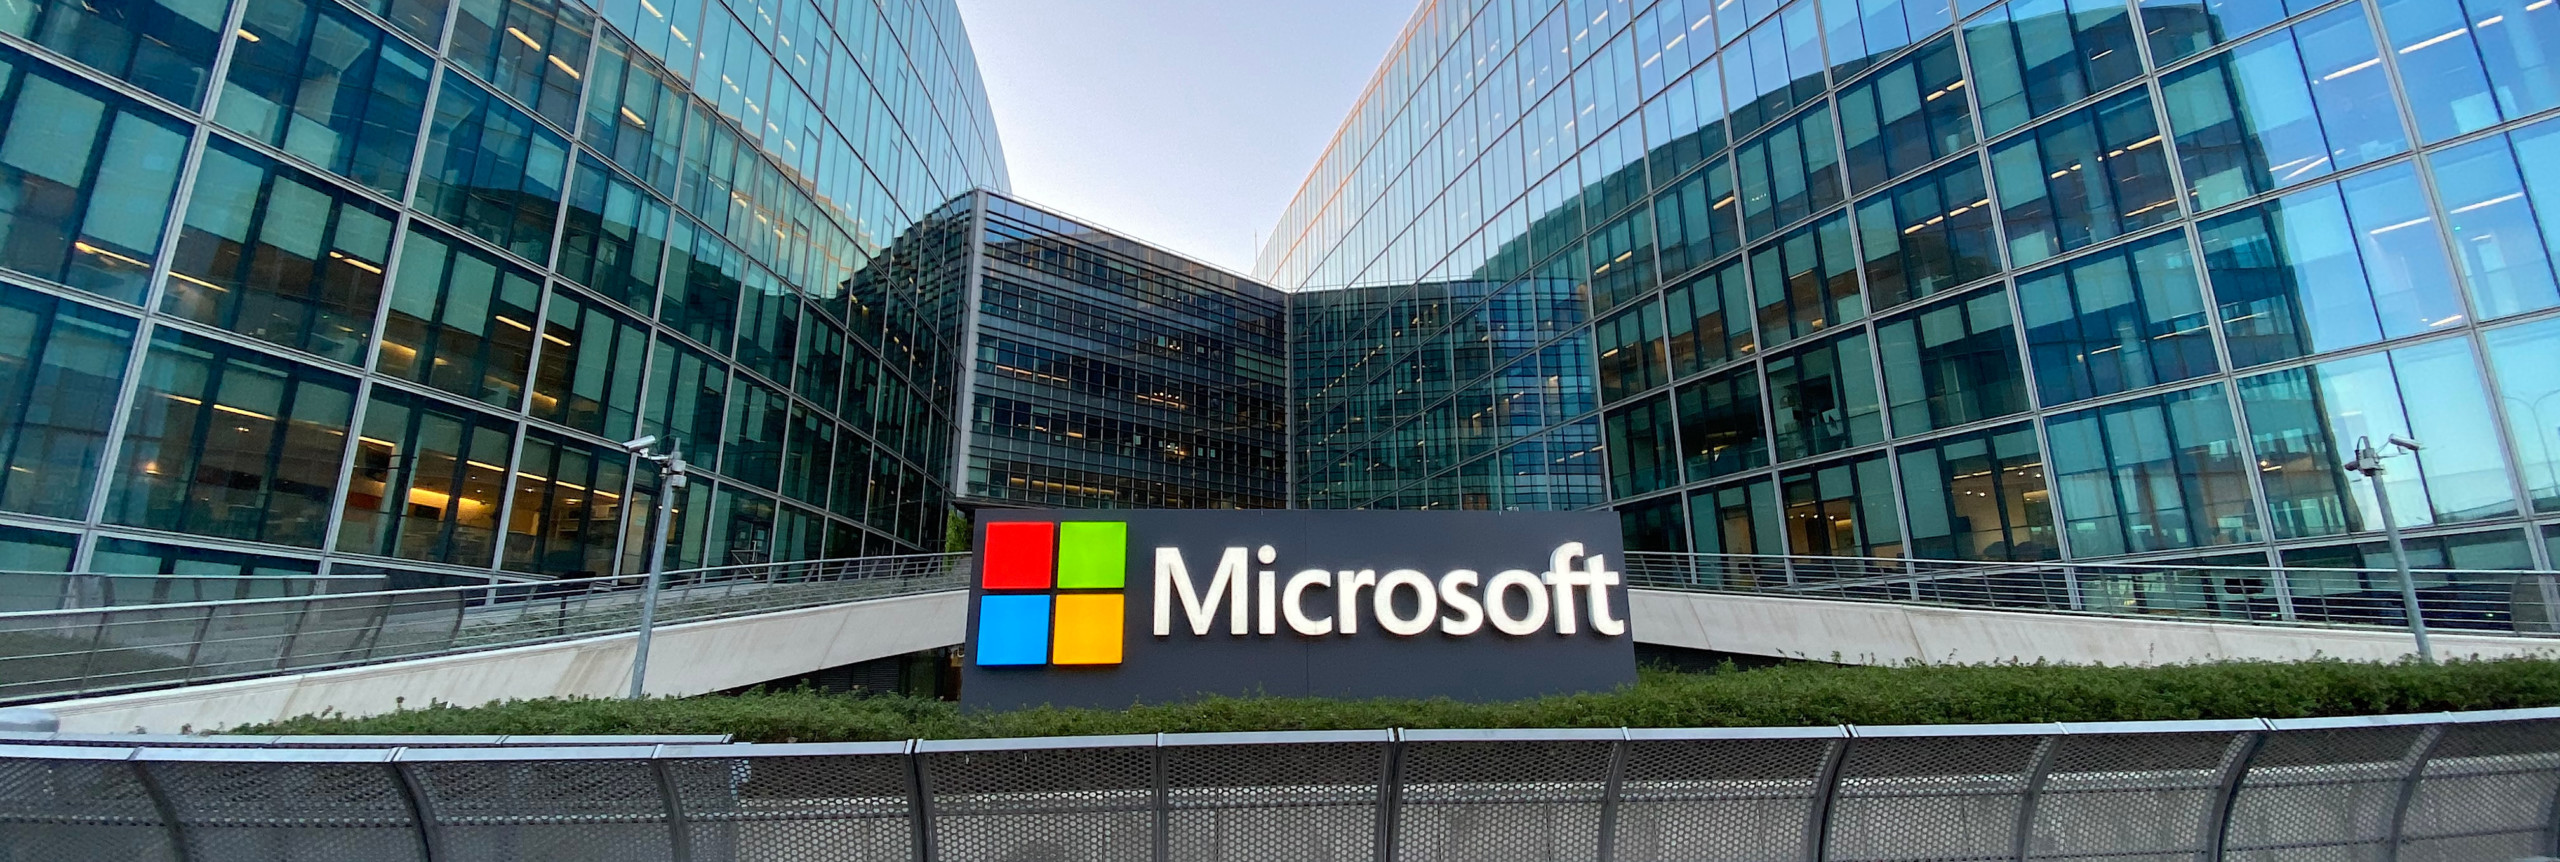 The Big-Call-Depotupdate: Microsoft und McDonald´s überzeugen mit starken Zahlen - Hershey stürmt auf neue Allzeithochs!